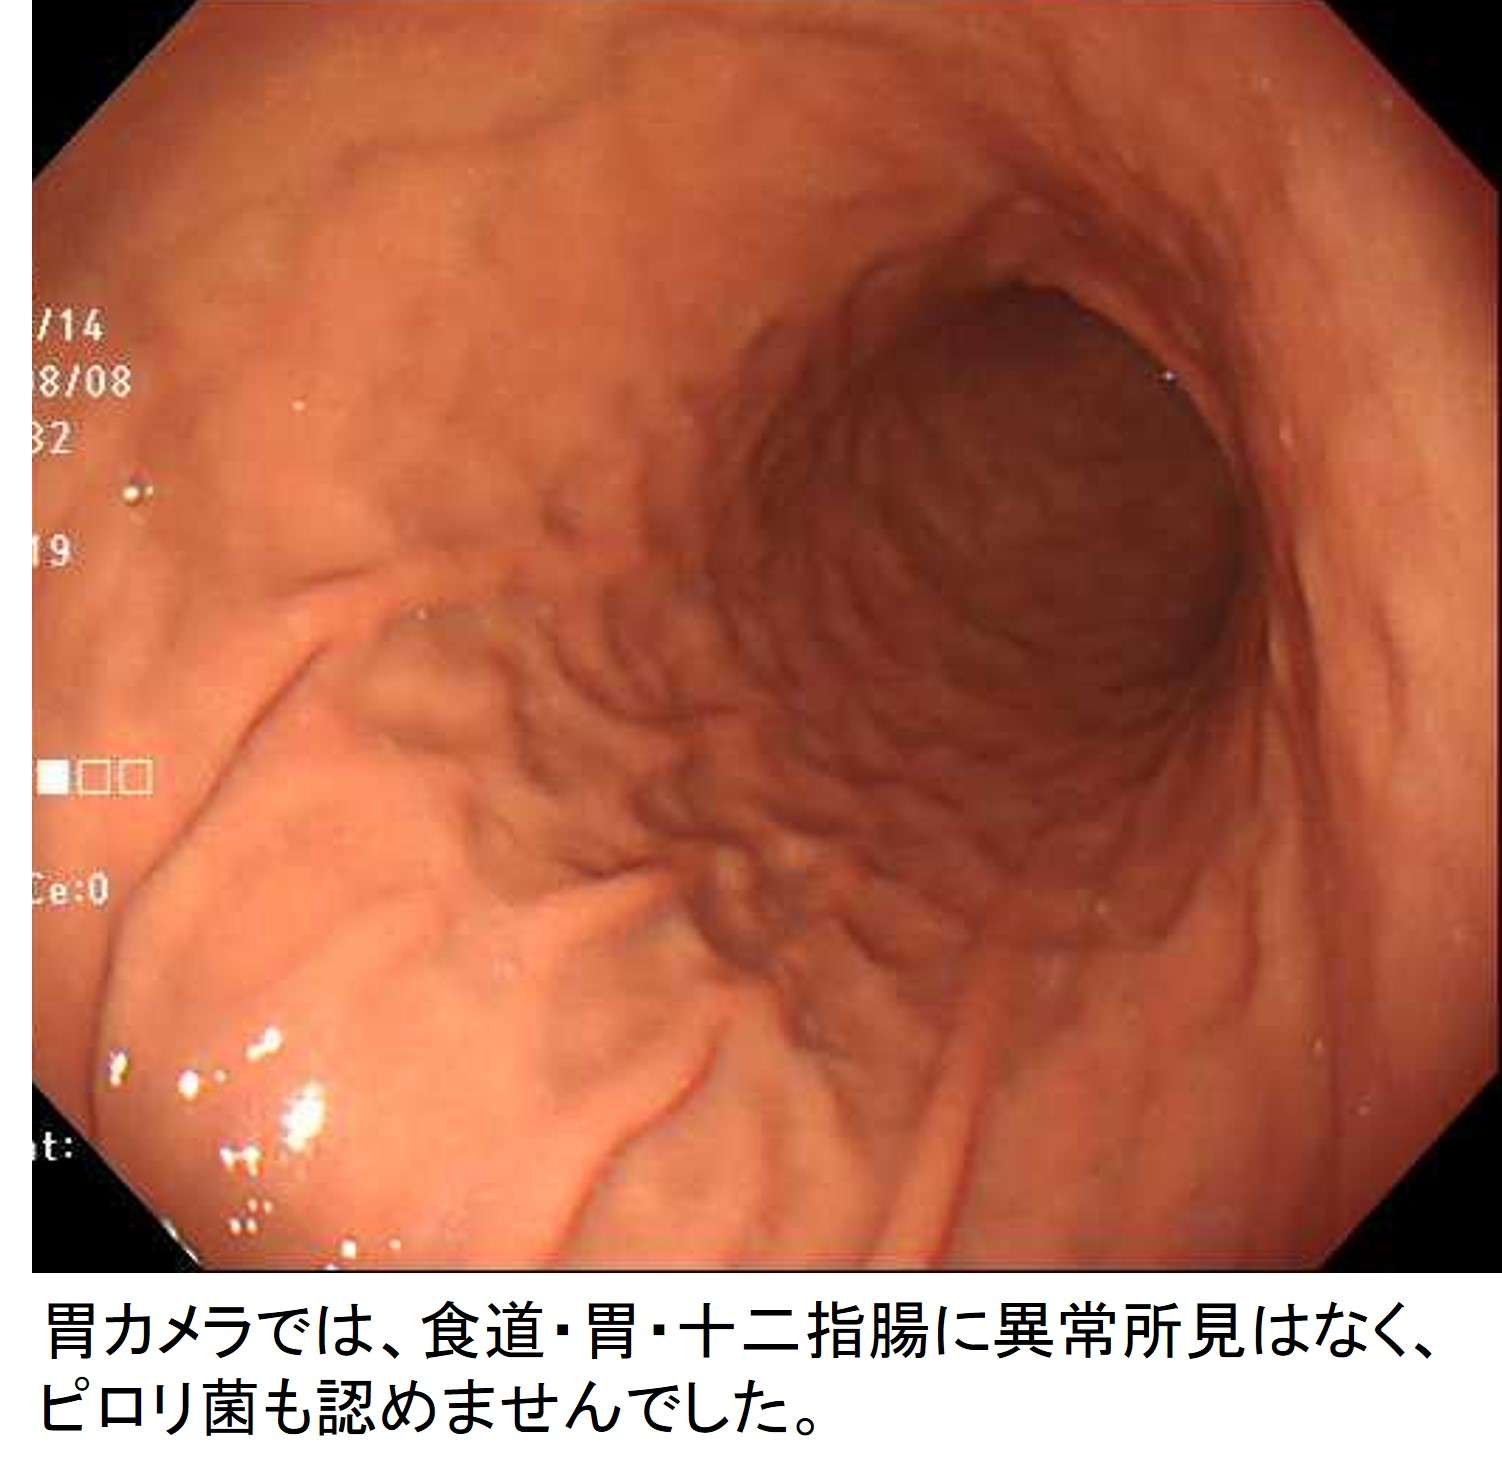 胃の内視鏡画像